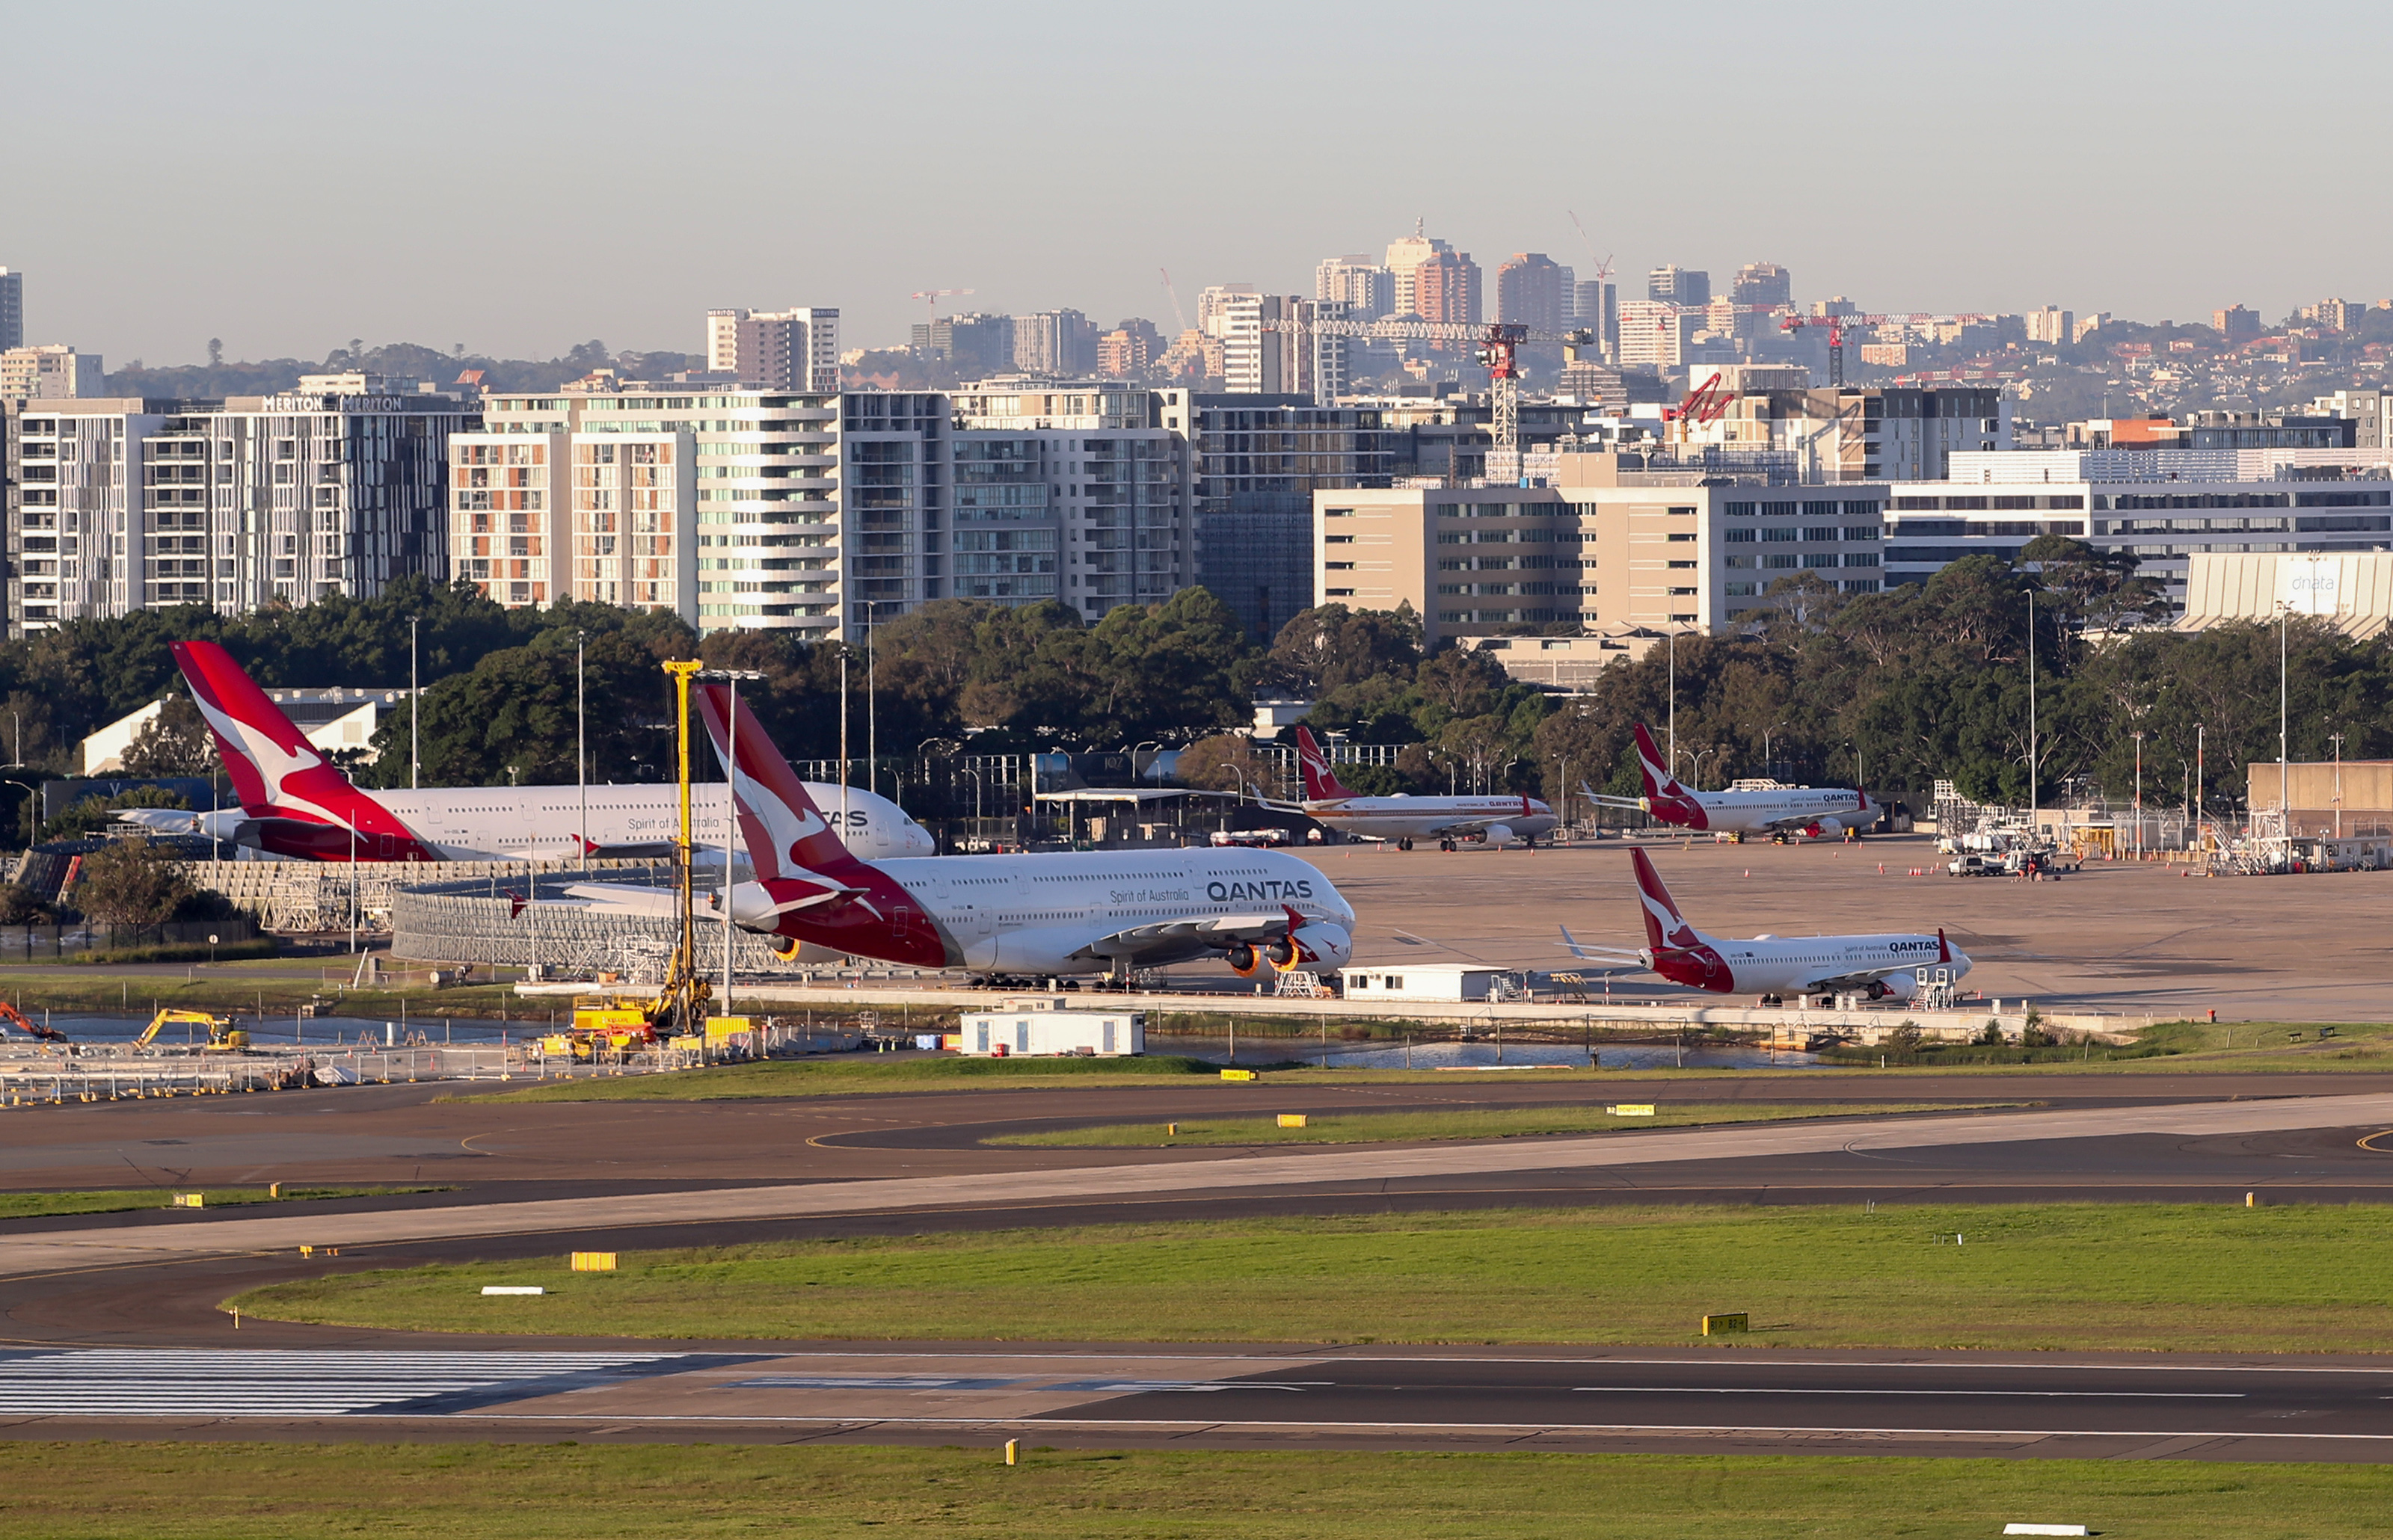 4月15日,在澳大利亚悉尼机场,多架澳洲航空客机停泊在维修区